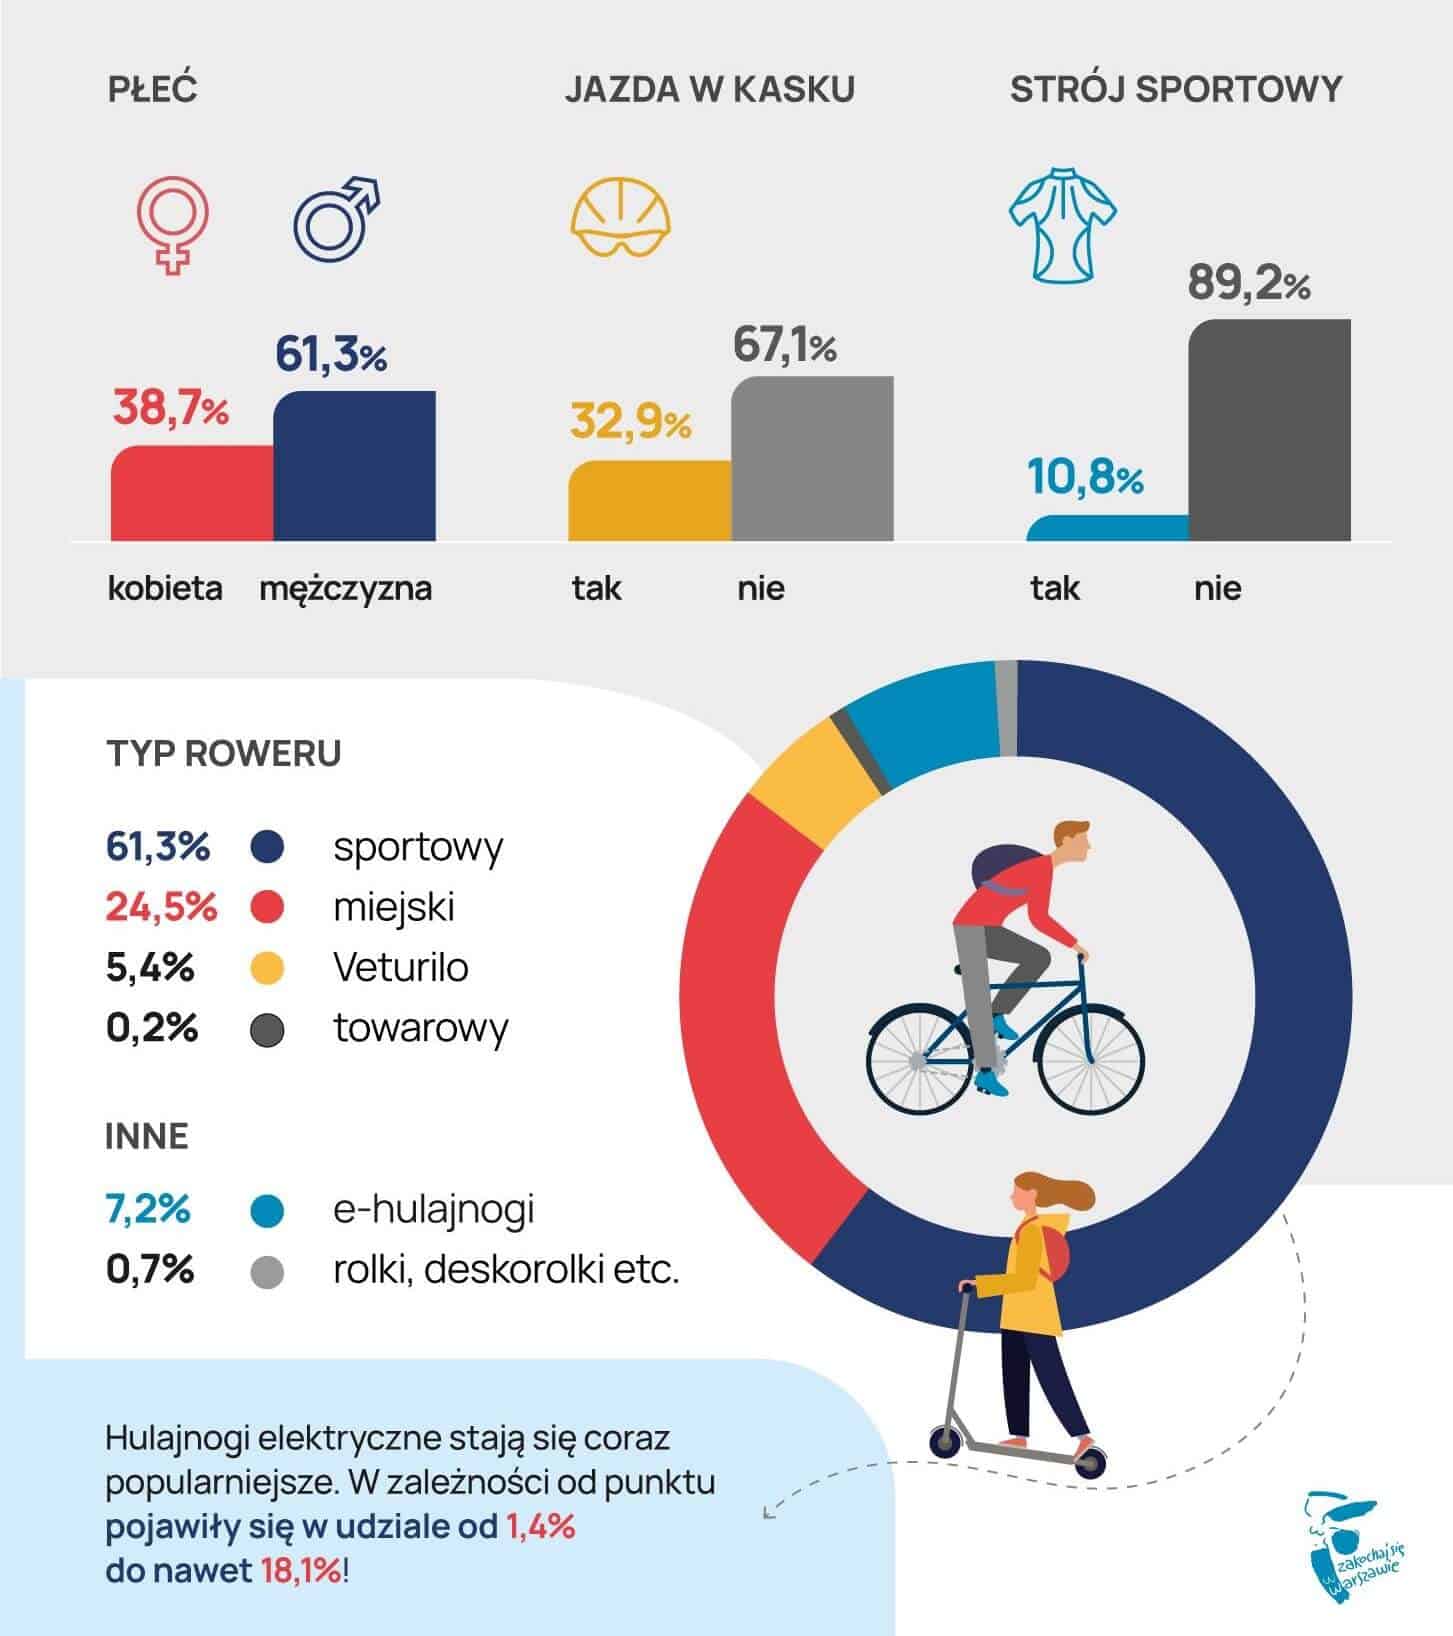 Hulajnogi elektryczne to średnio 7 proc. ruchu rowerowego w Warszawie